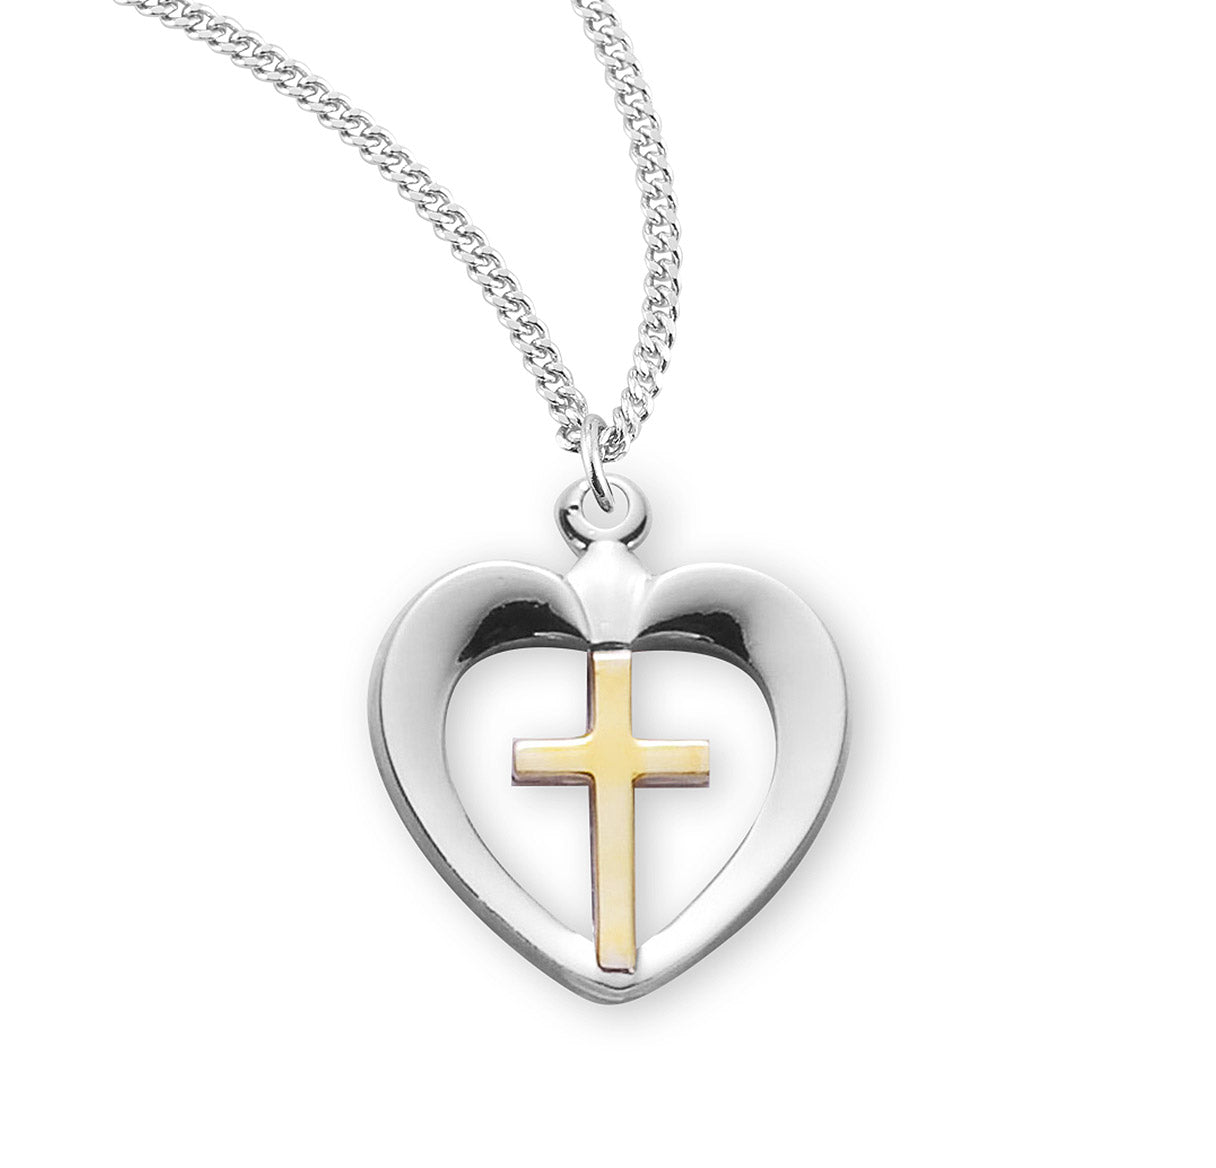 Two-Tone Sterling Silver Cross in Heart Pendant